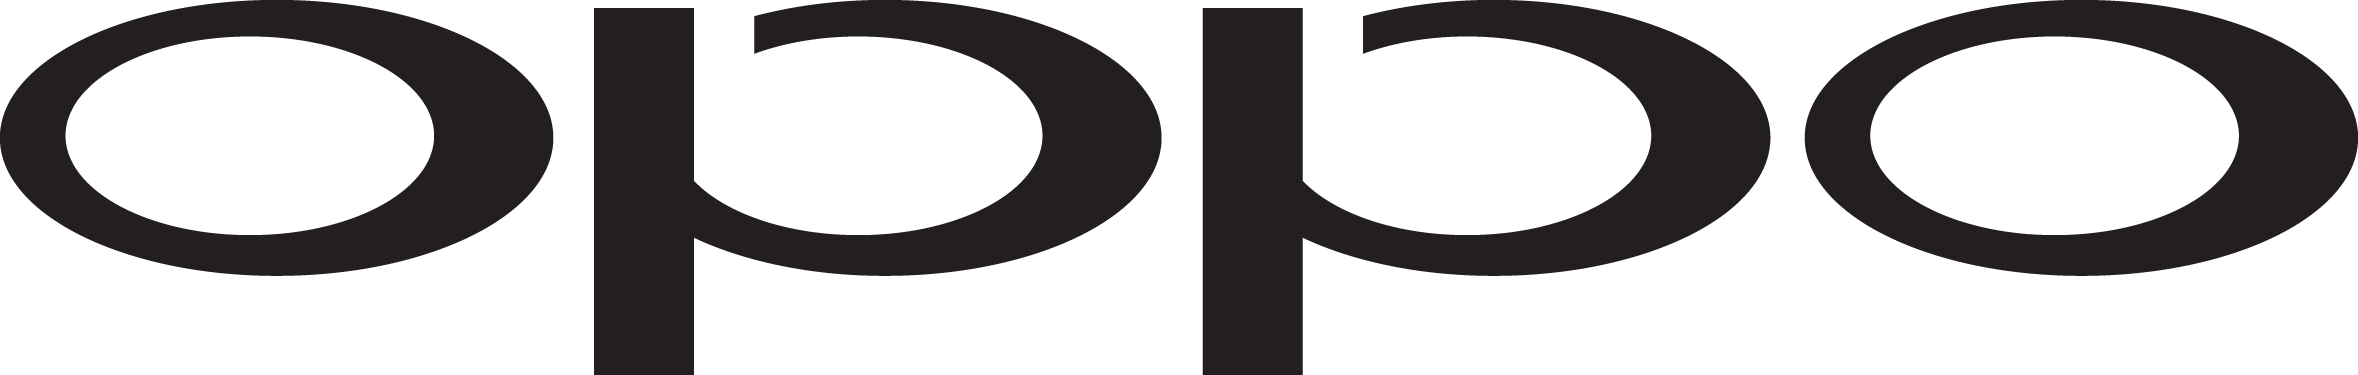 OPPO Logo Black.png